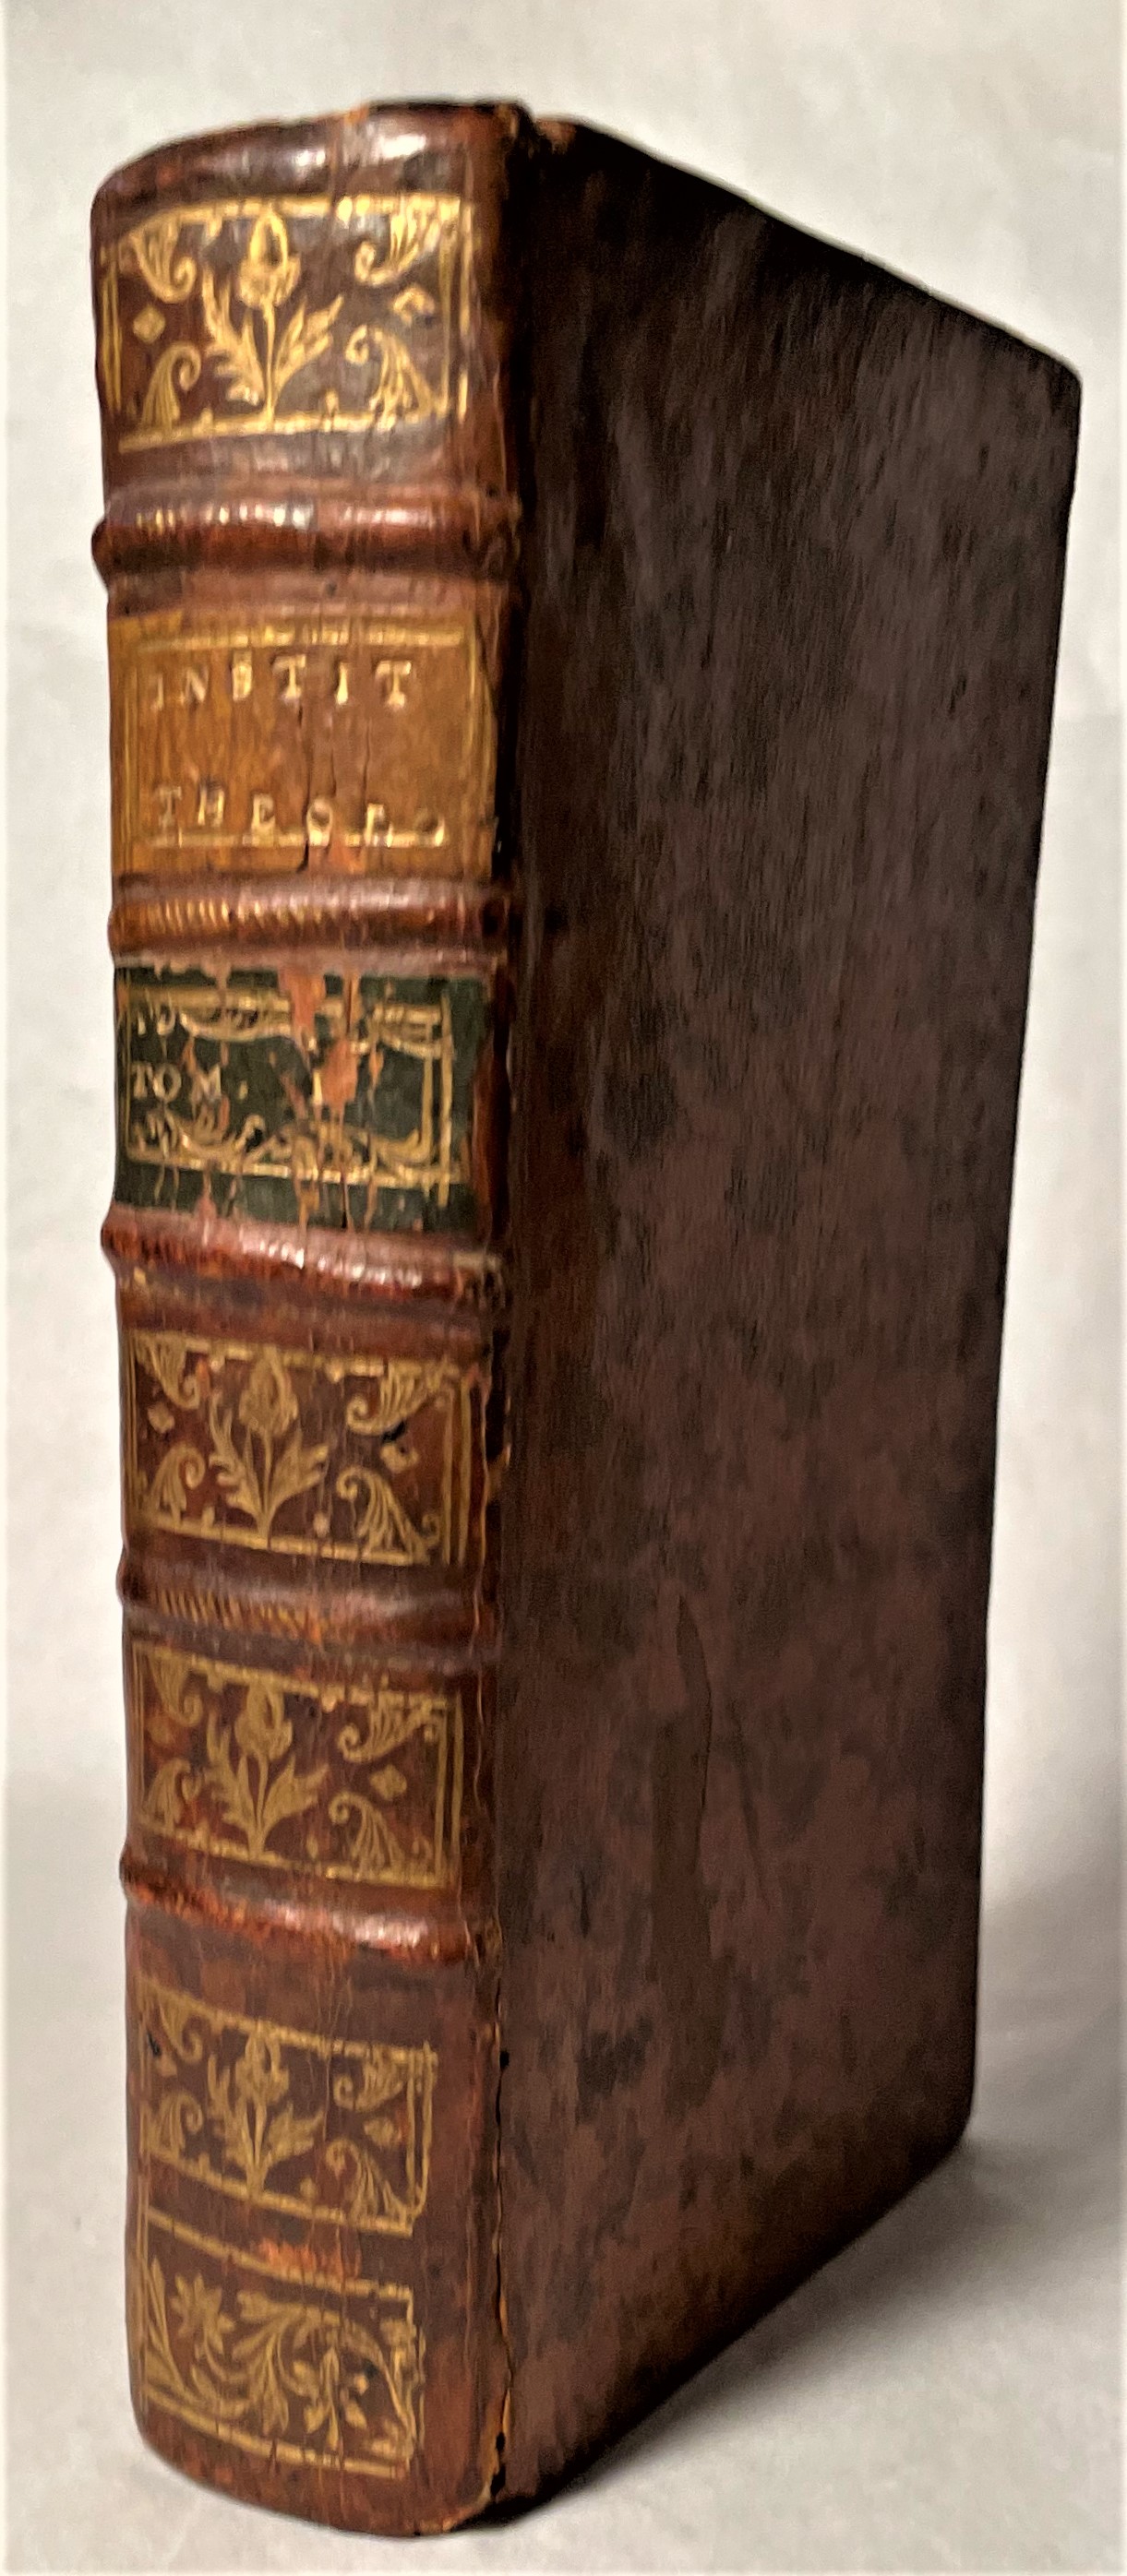 COLLET, PETRUS - Institutiones Theologicae, Quas E Tournelianis Praelectionibus Ad Usum Seminariorum One Volume, Only, of Six)